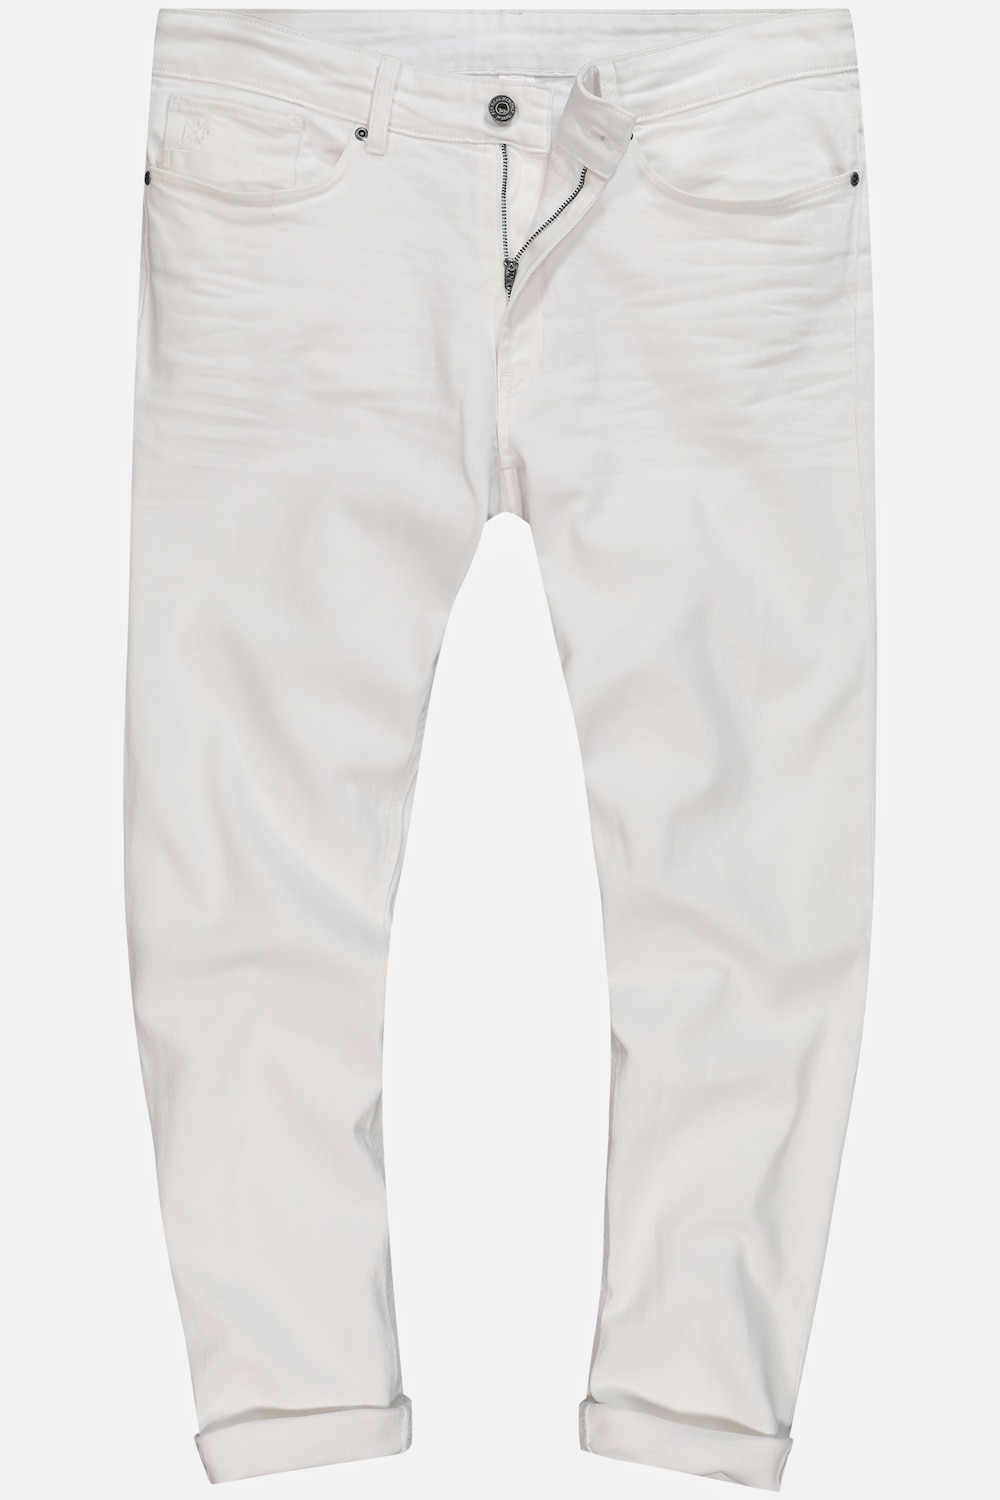 Grote Maten Jeans, Heren, wit, Maat: 114, Katoen, JP1880